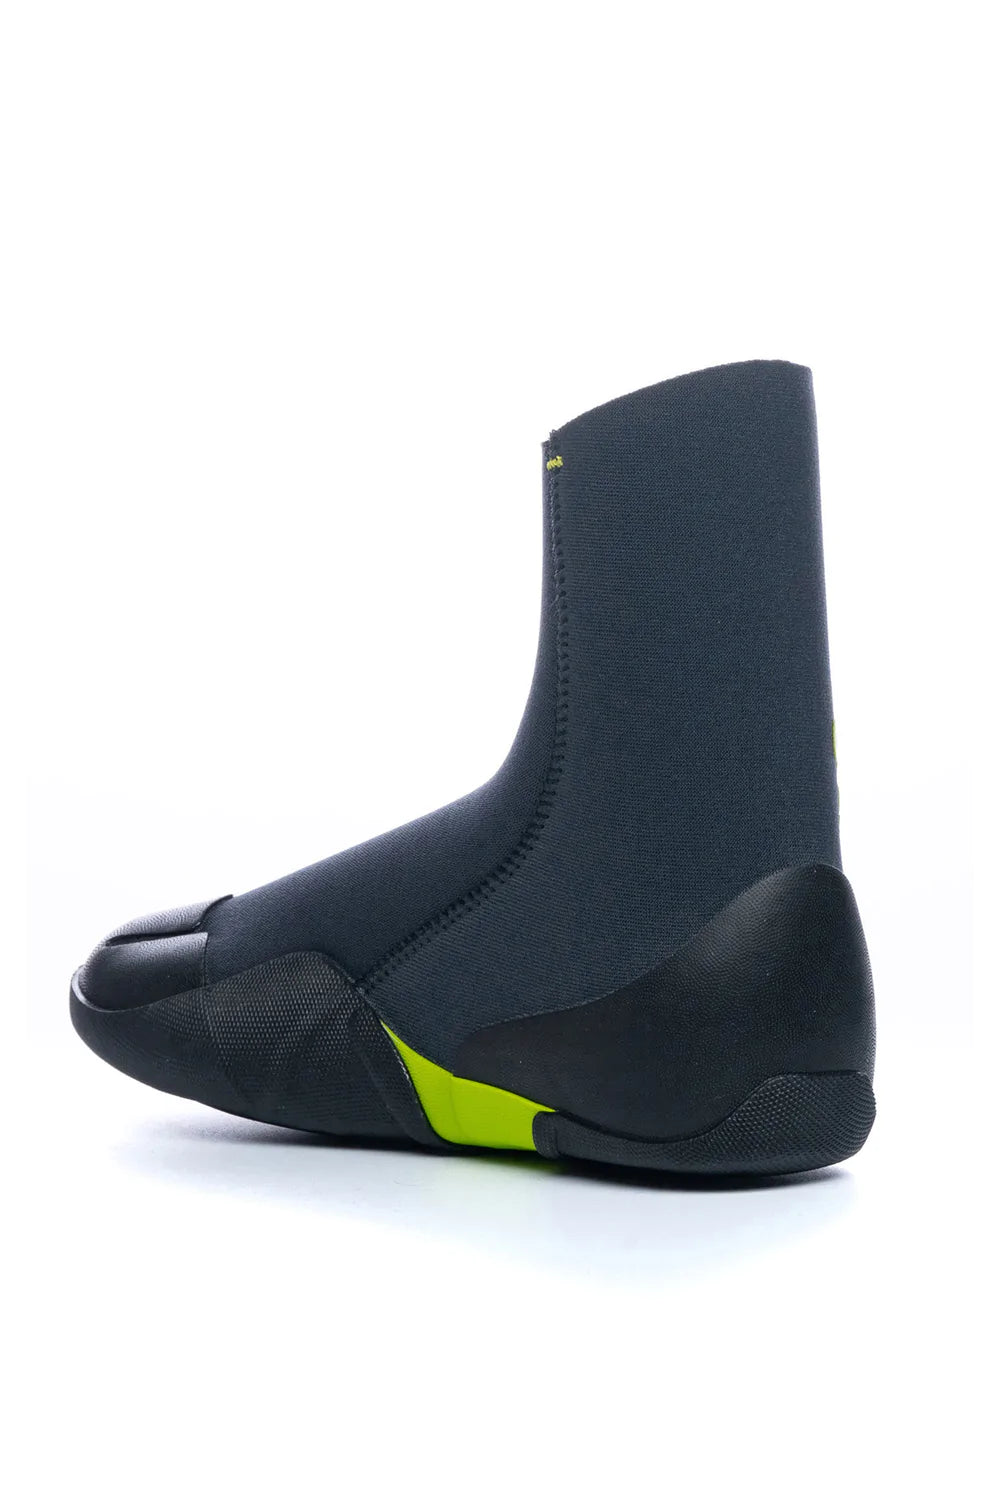 C-Skins Legend Junior 3.5mm Round Toe Wetsuit Boot